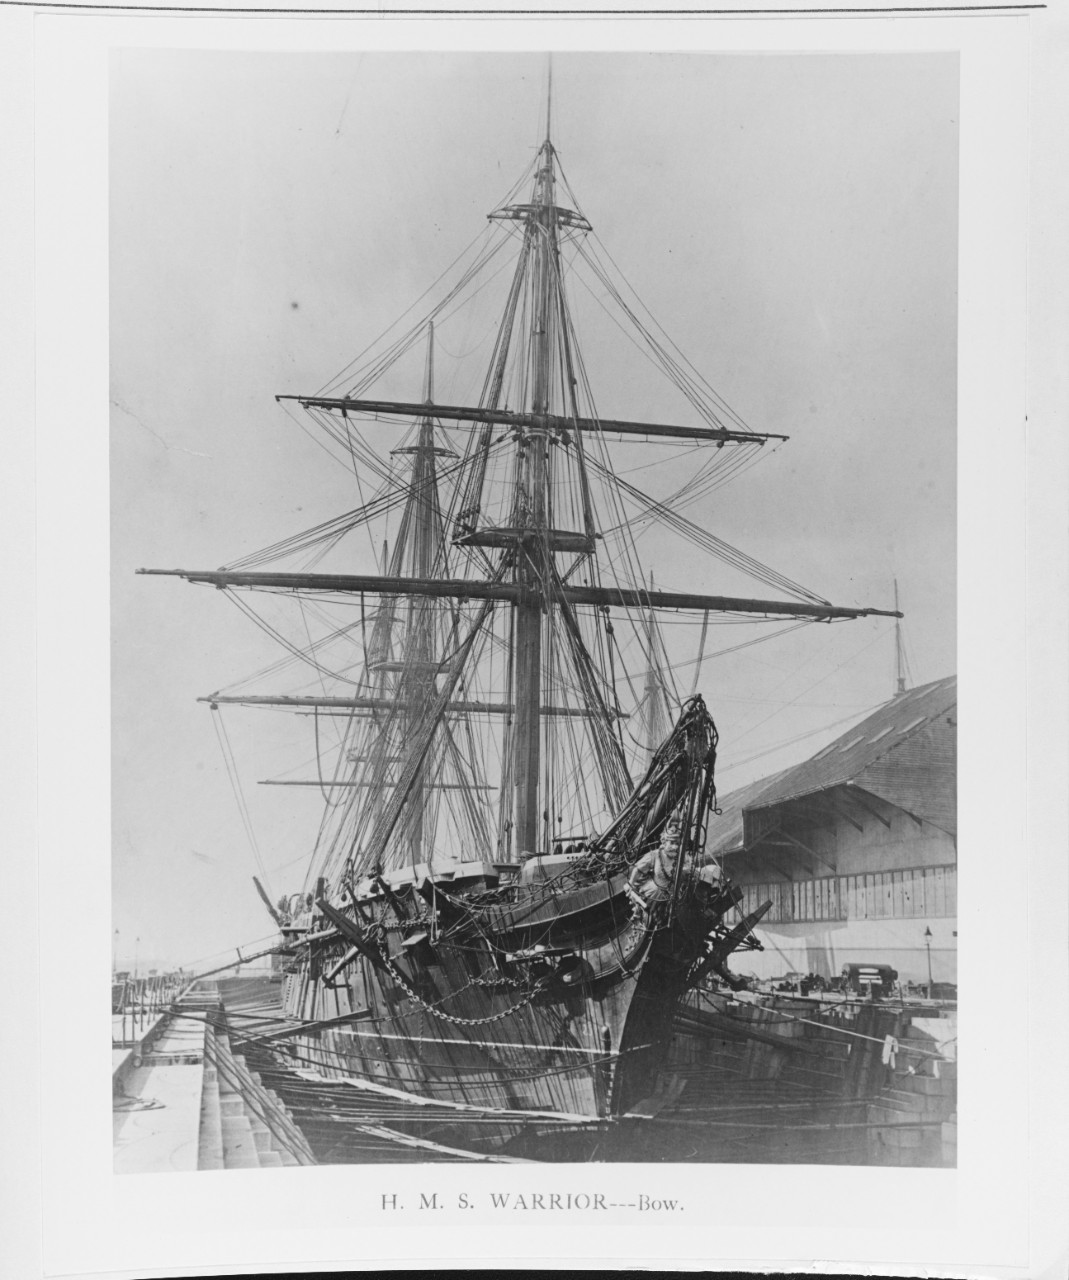 HMS WARRIOR (BRITISH BATTLESHIP, 1860)